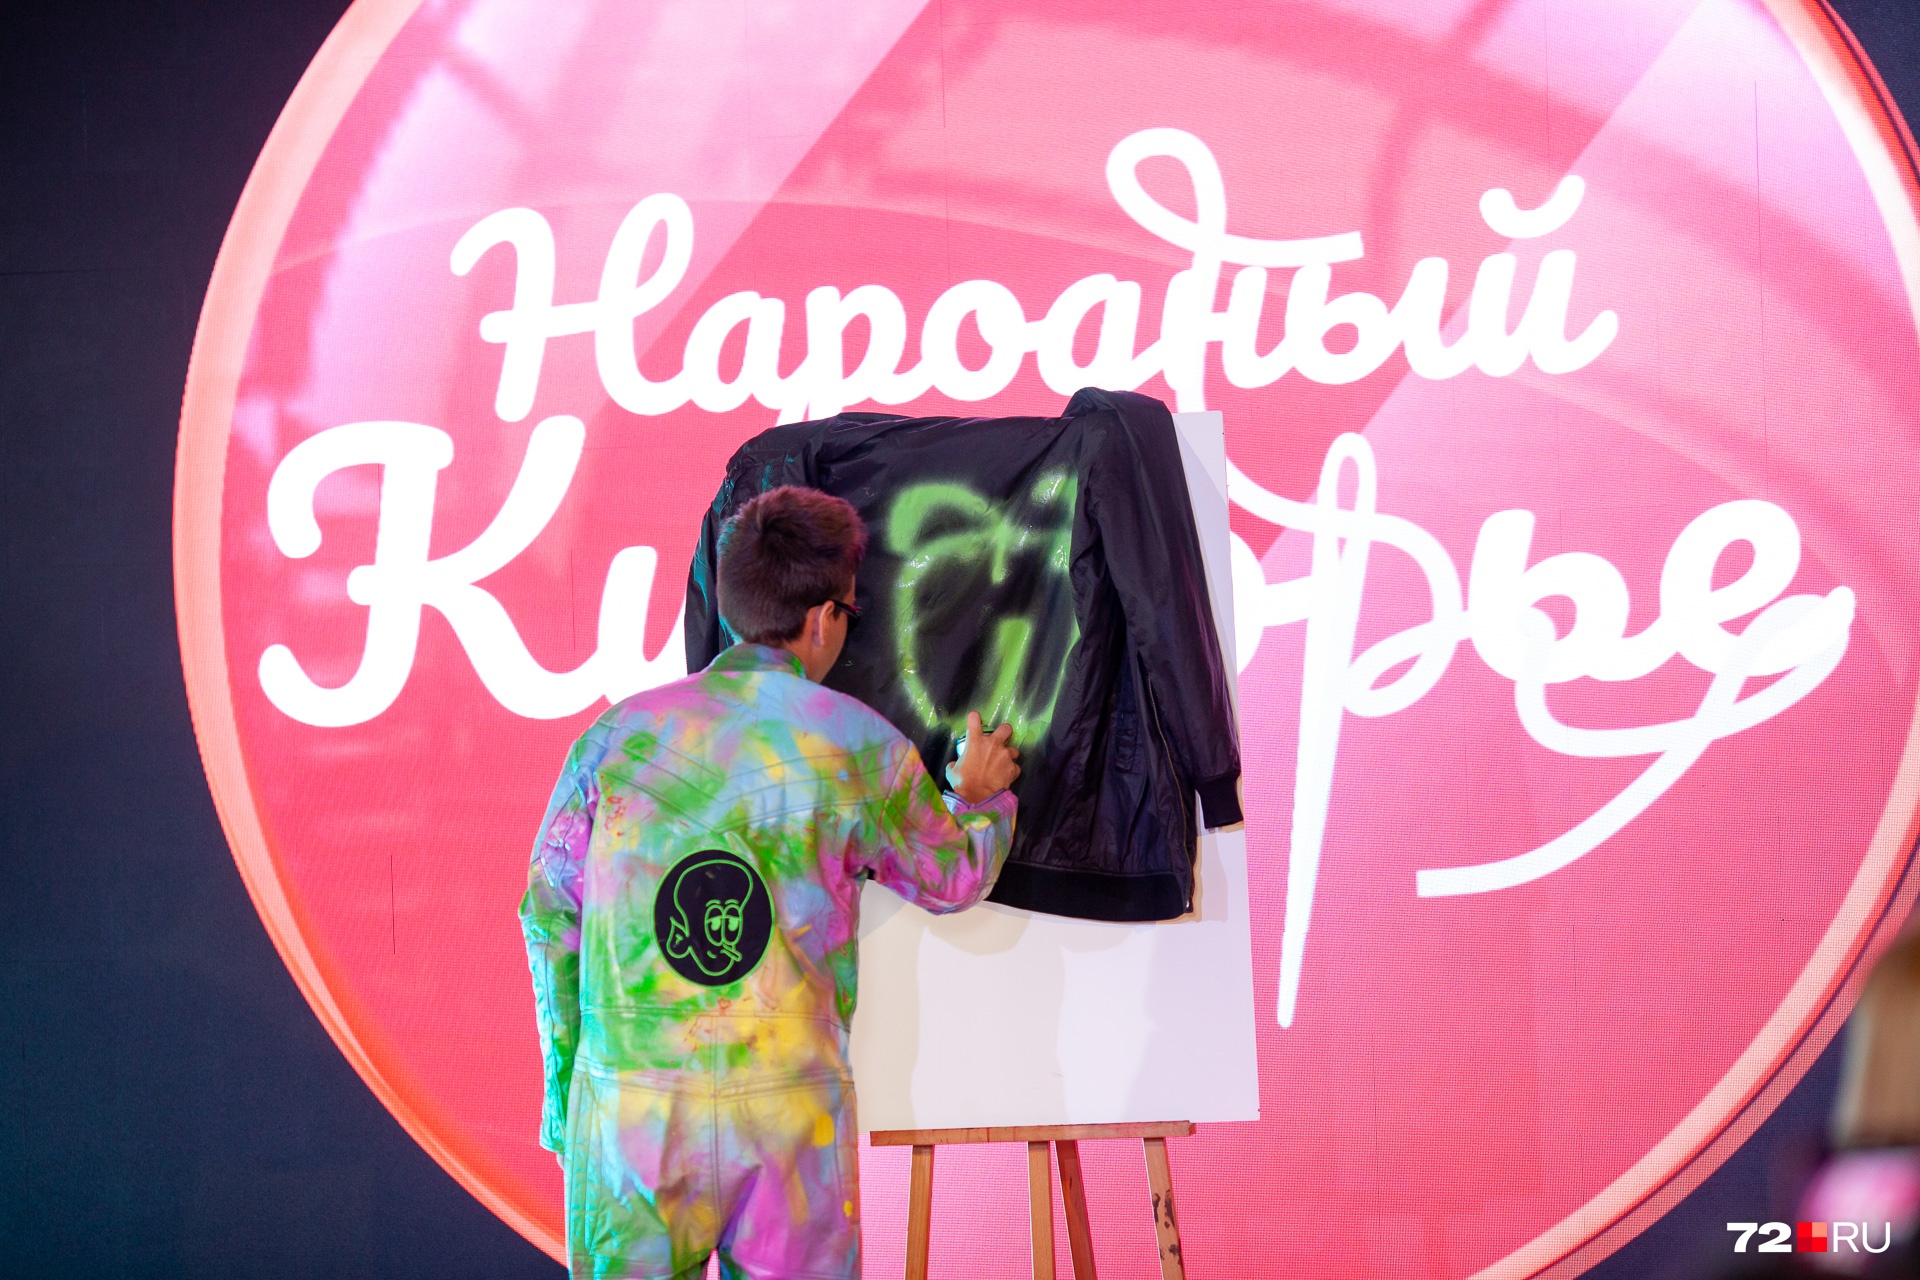 Это юный дизайнер Даниил Плесневцов, и он устроил на сцене настоящий перформанс — вынес холст и баллончик с краской. Ну вы видите